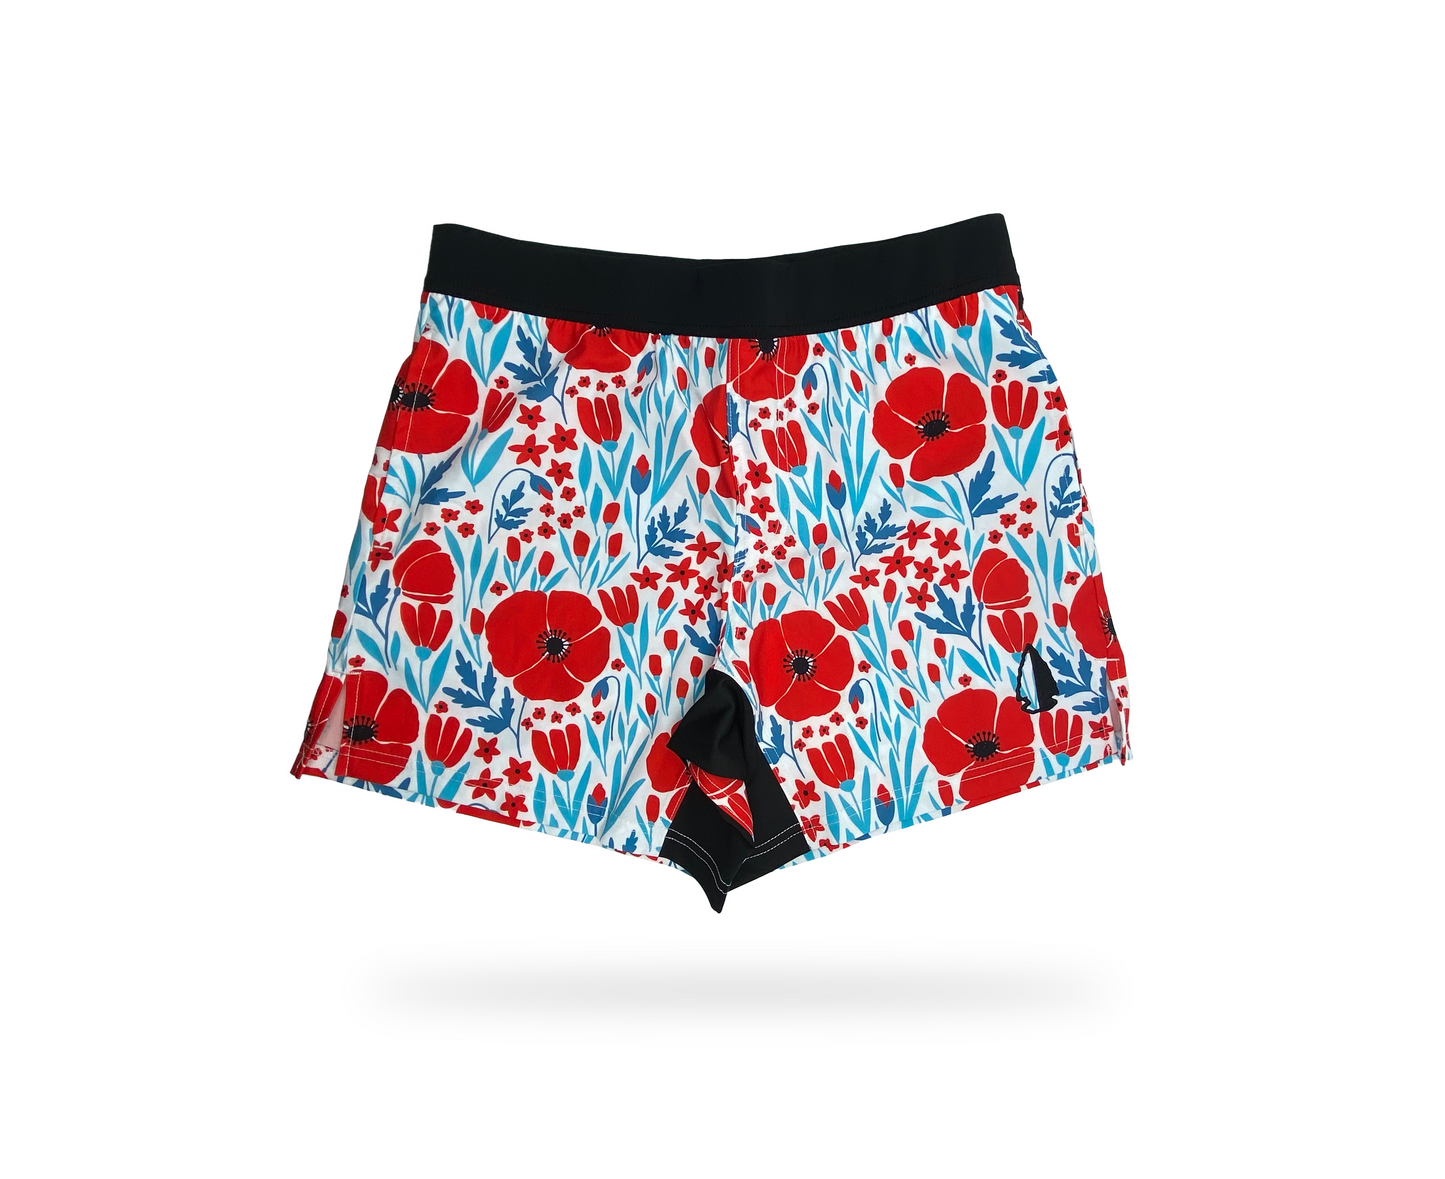 THF Athletic Shorts - Poppy